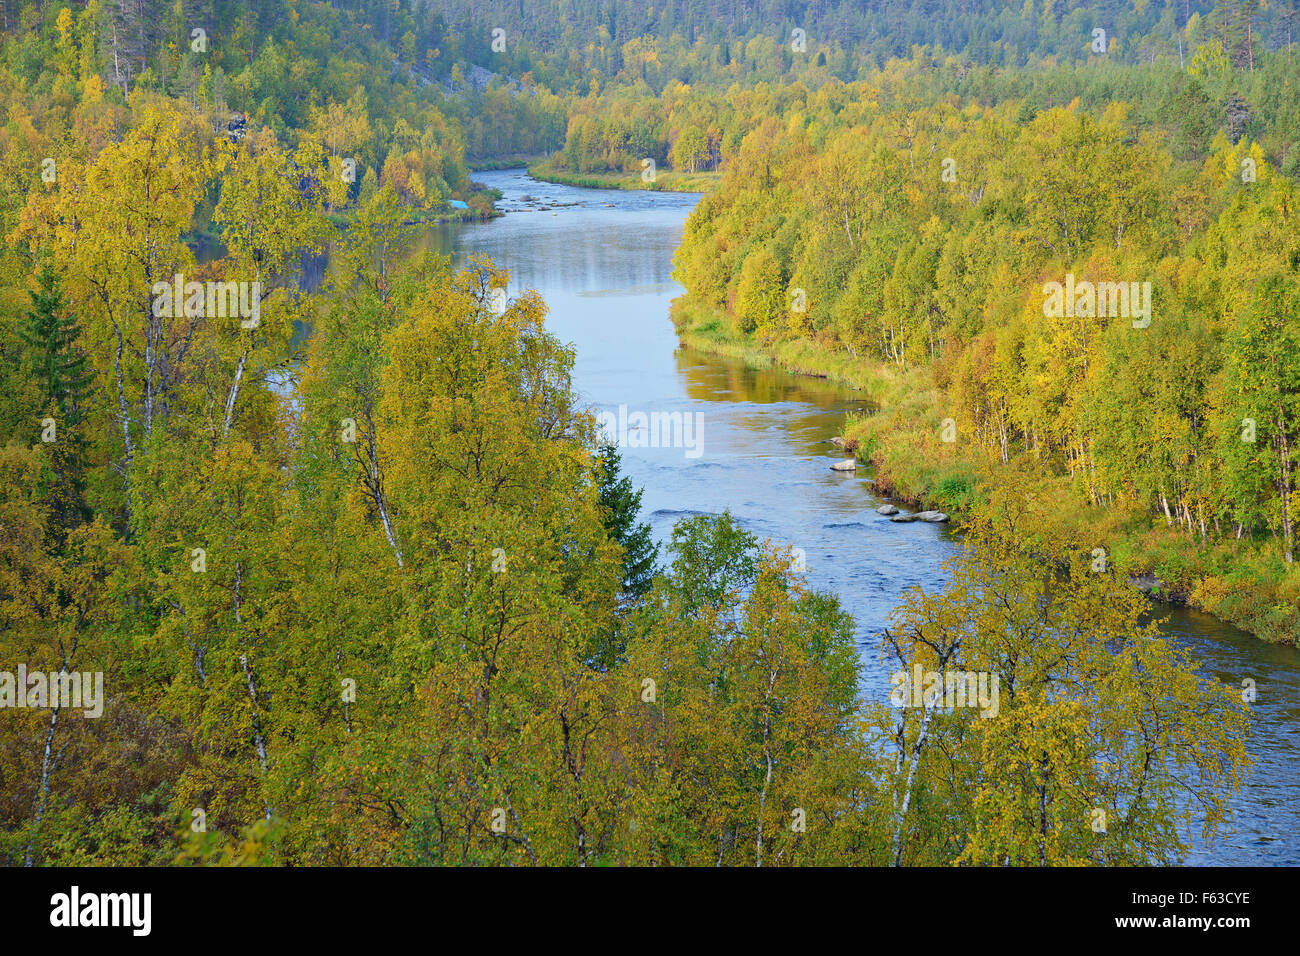 Nuortti River, le Parc National Urho Kekkonen, la Laponie. Banque D'Images